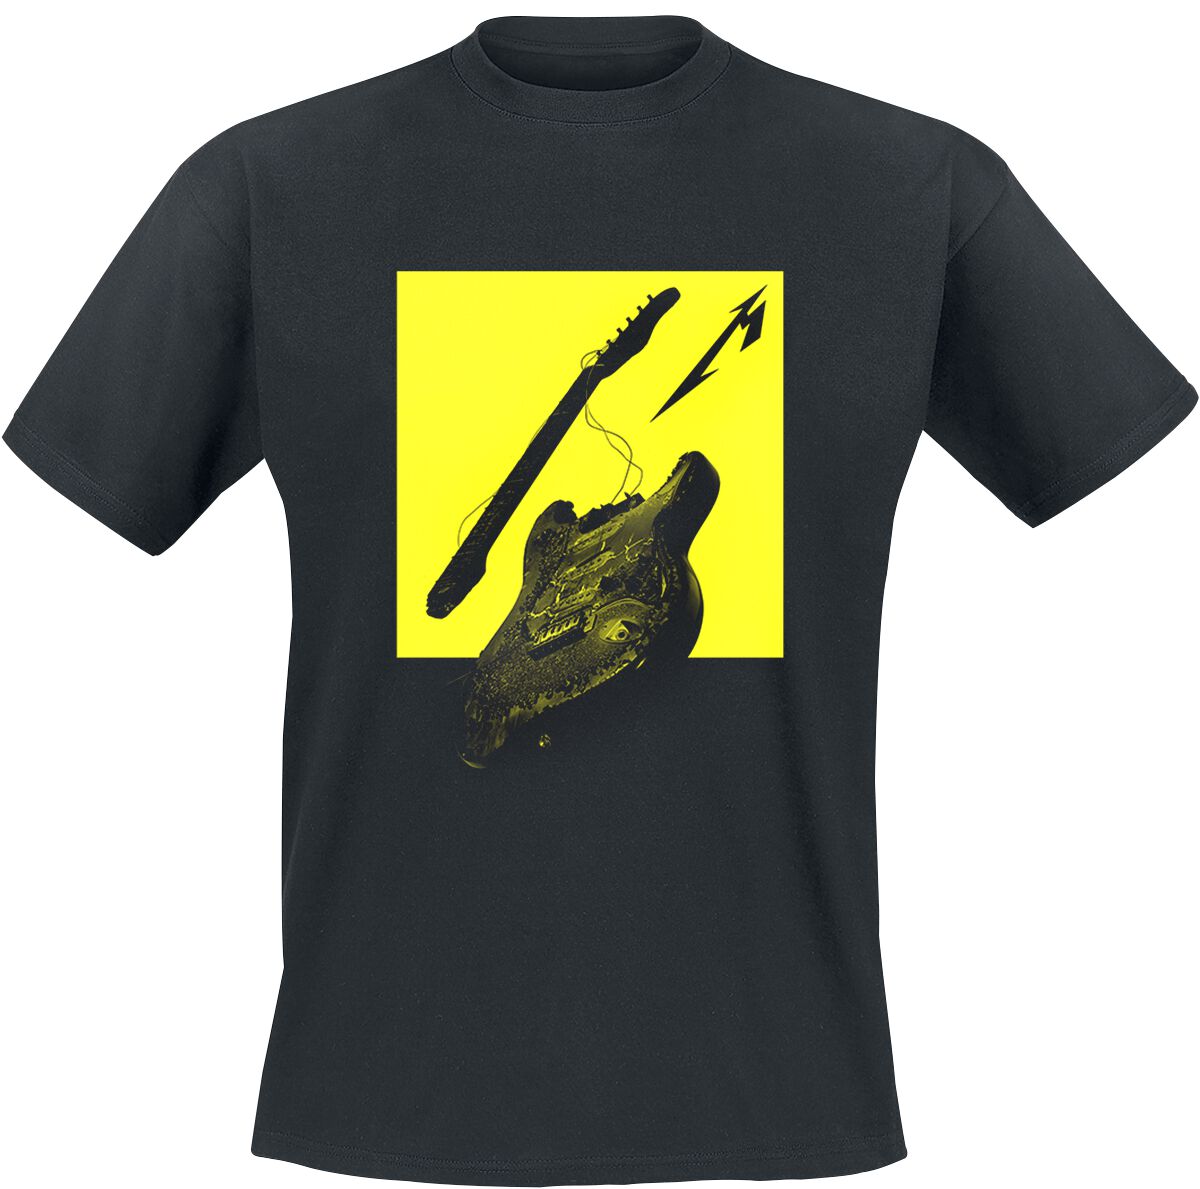 Metallica T-Shirt - Broken/Burnt Guitar (M72) - S bis XL - für Männer - Größe L - schwarz  - Lizenziertes Merchandise!